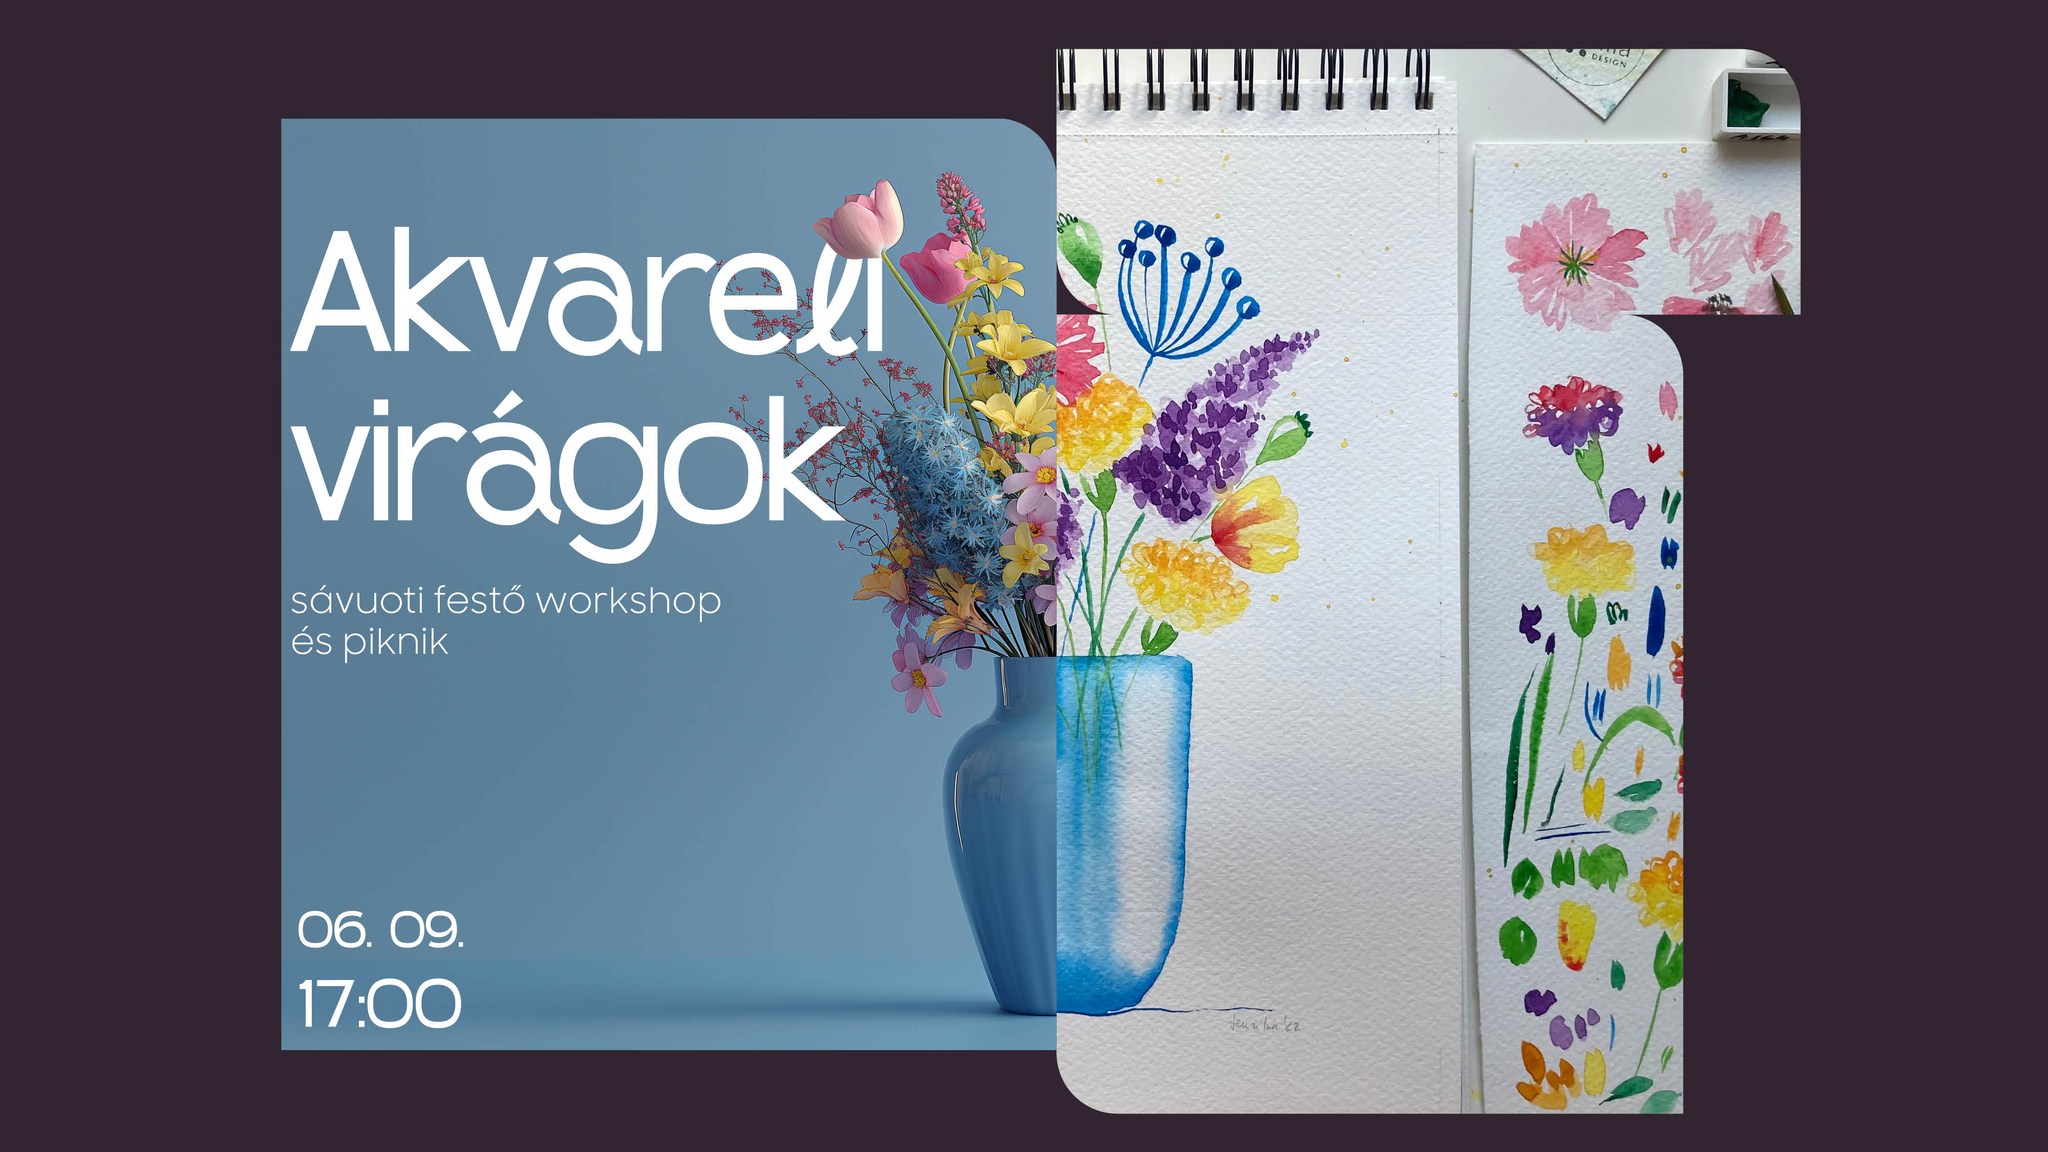 Akvarell-virágok – sávuoti festő workshop és piknik a zsinagóga előtti füves területen Időpont: 06. 09. 17:00